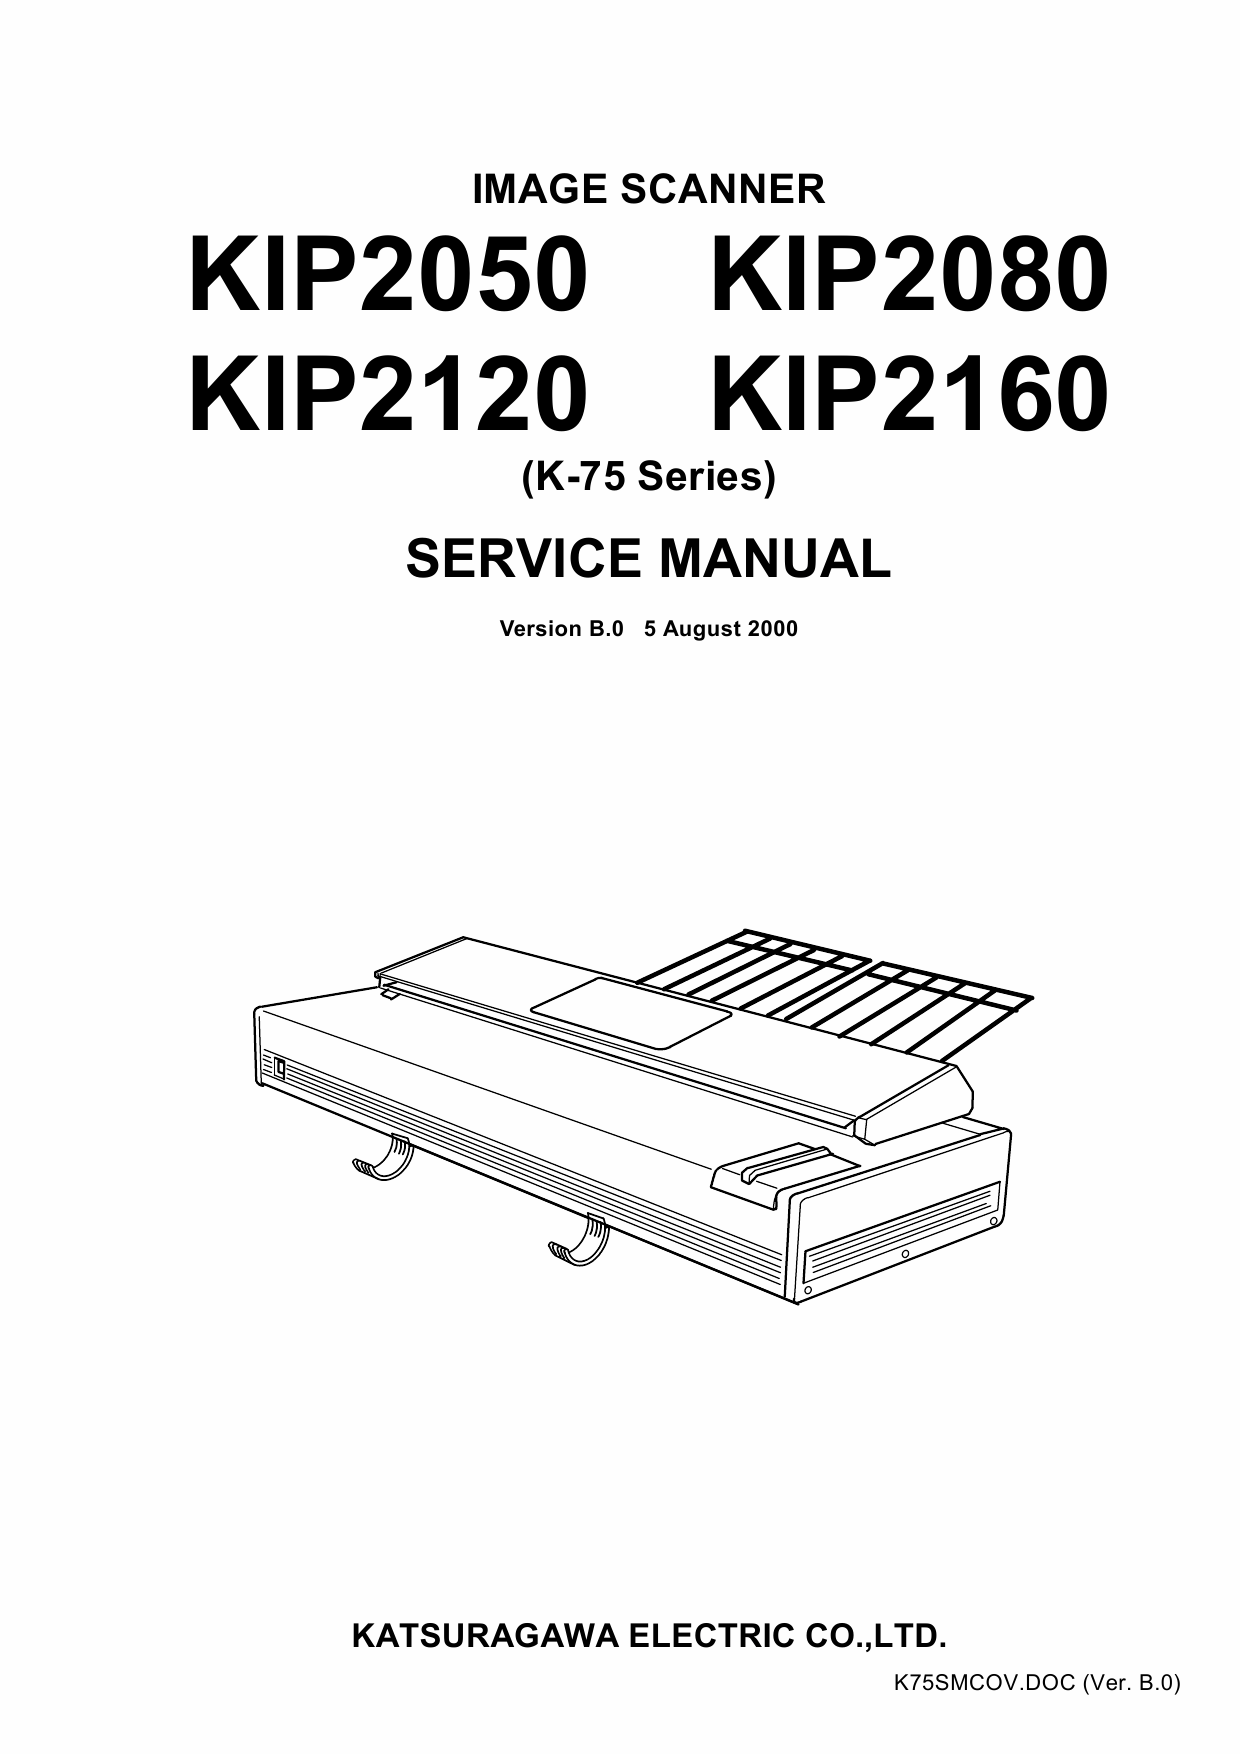 KIP 2050 2080 2120 2160 Image-Scanner K-75 Service Manual-1